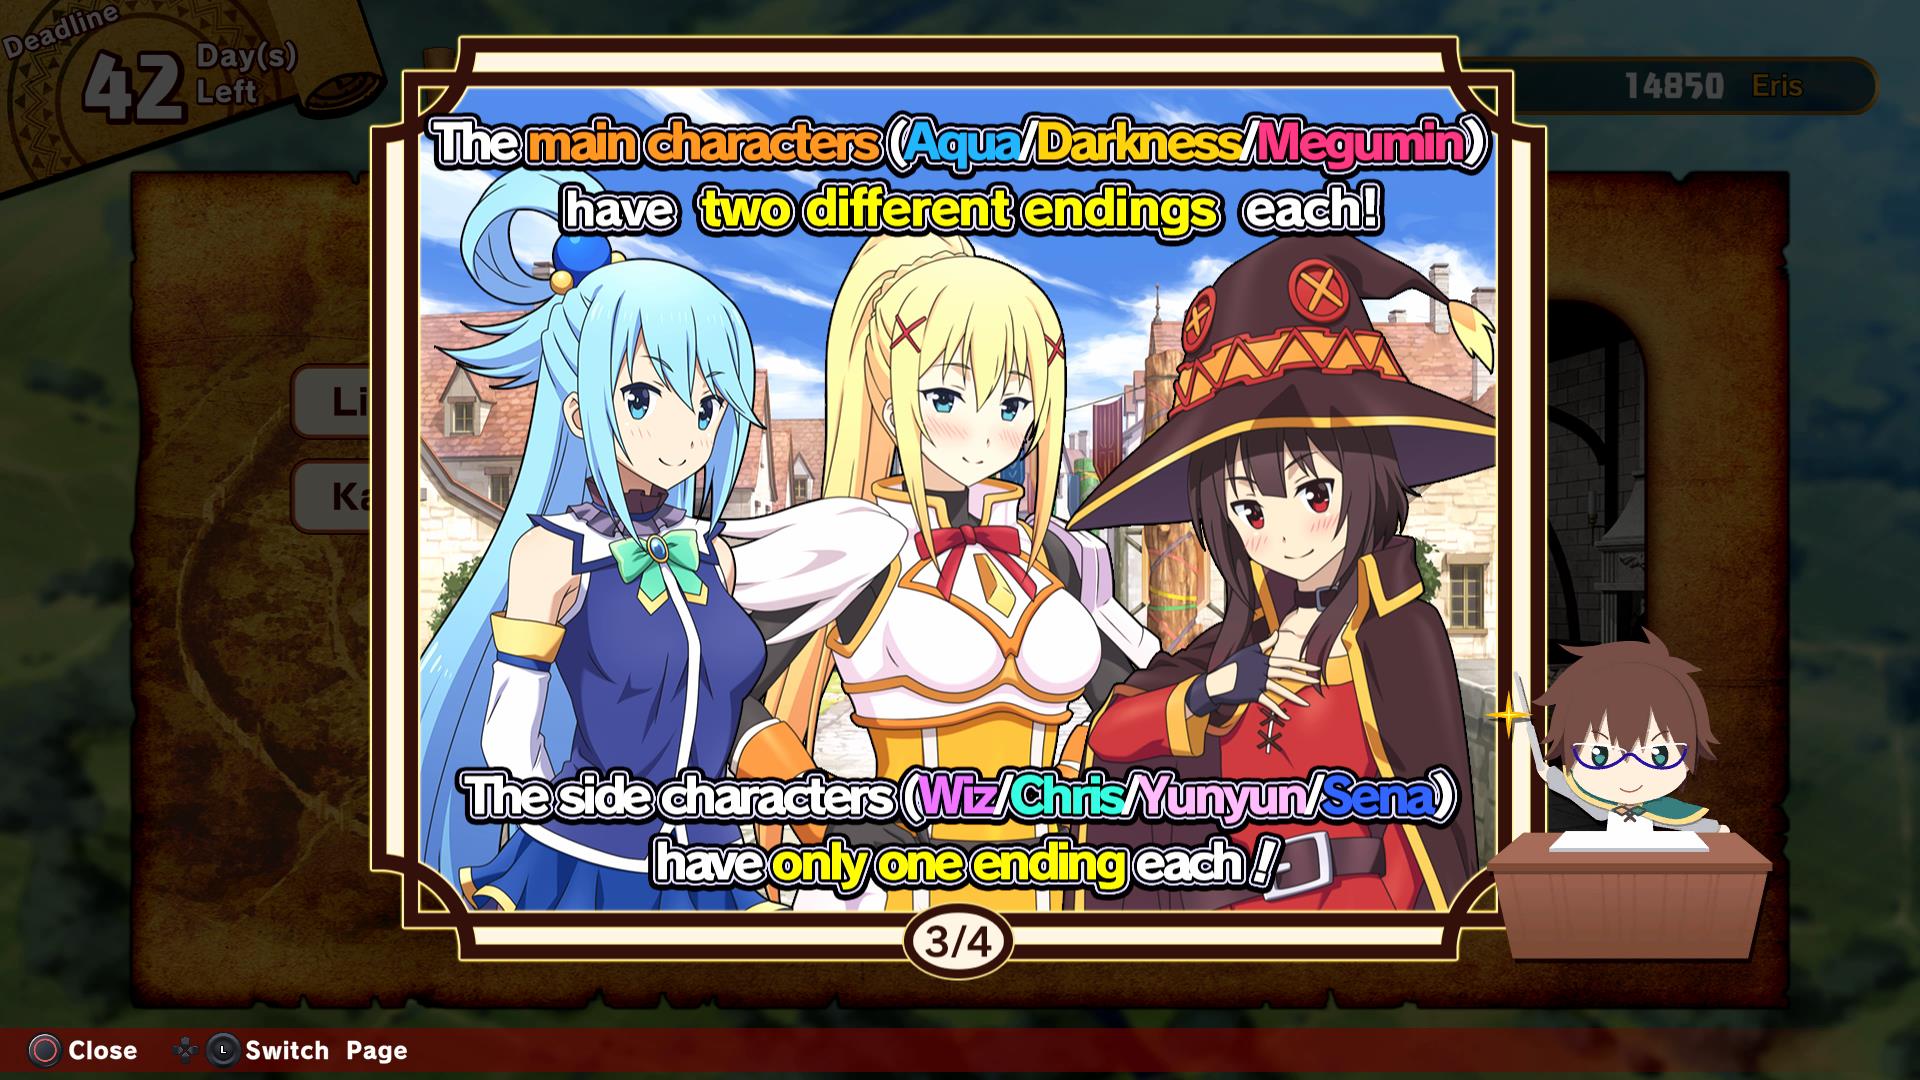 A screenshot showing the ending options from Konosuba